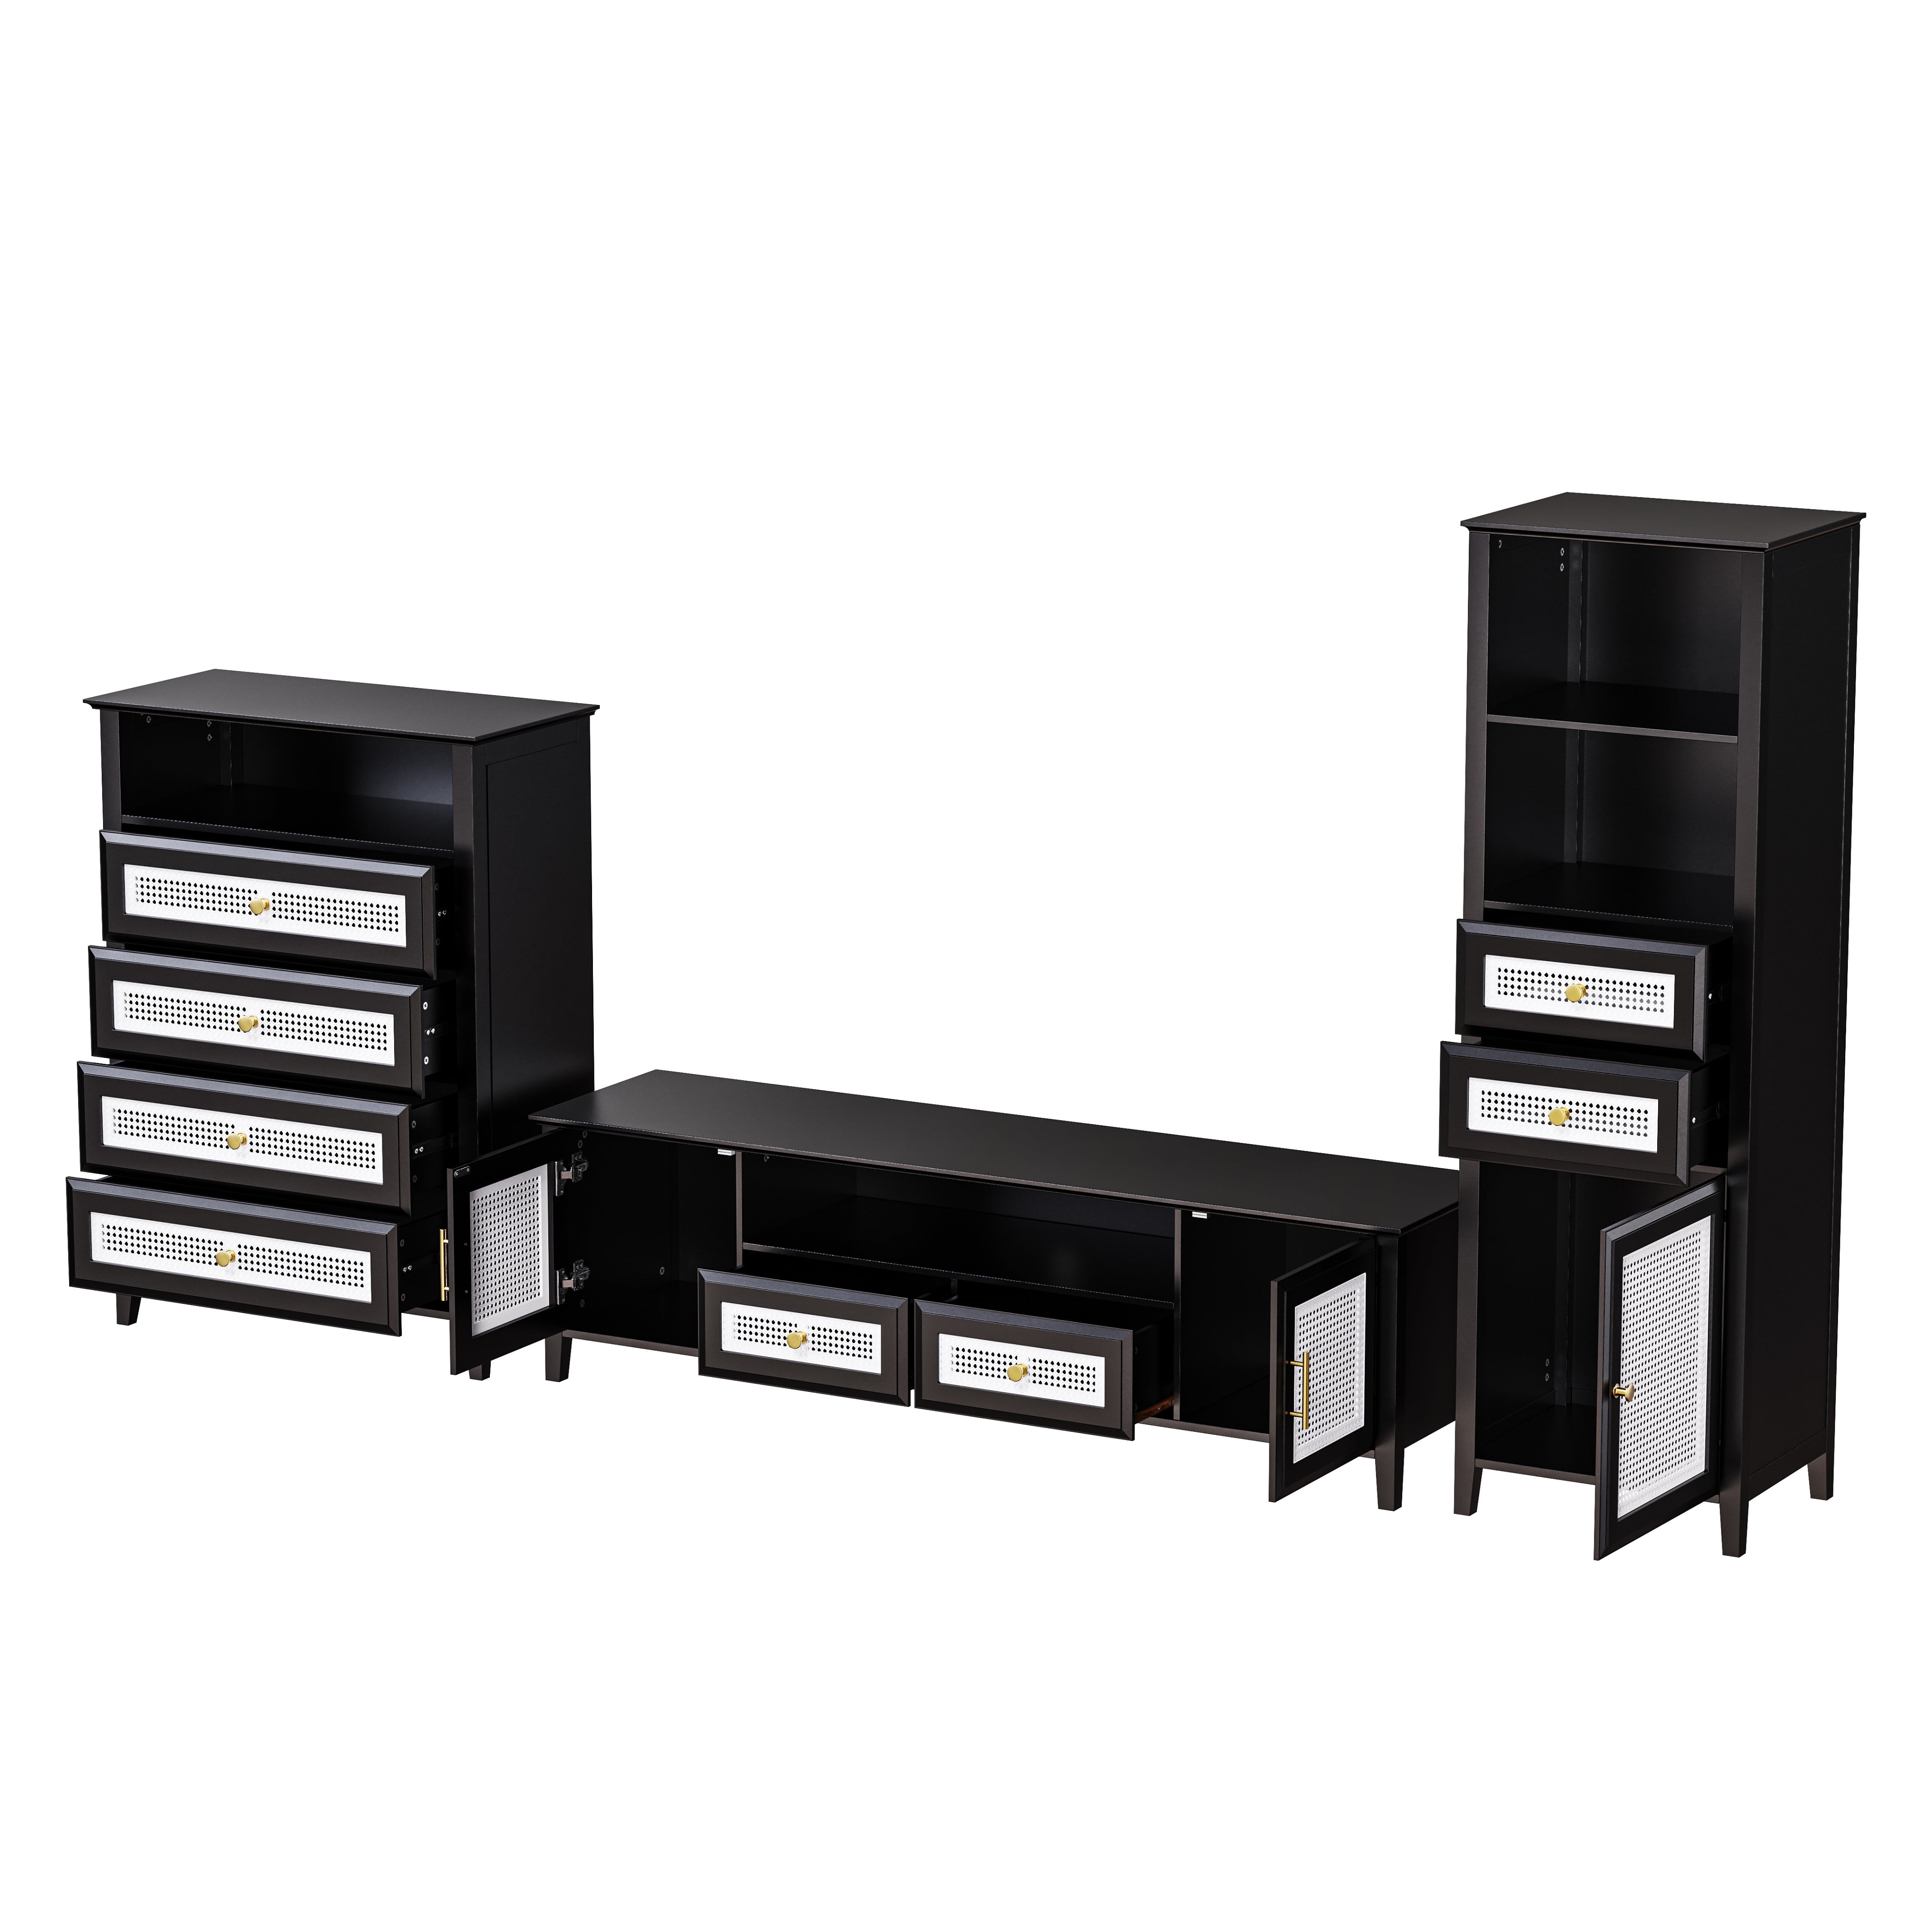 TACK STRIPS 27 - 10 OZ. SLIMLINE 500PC BOX — Ronco Furniture